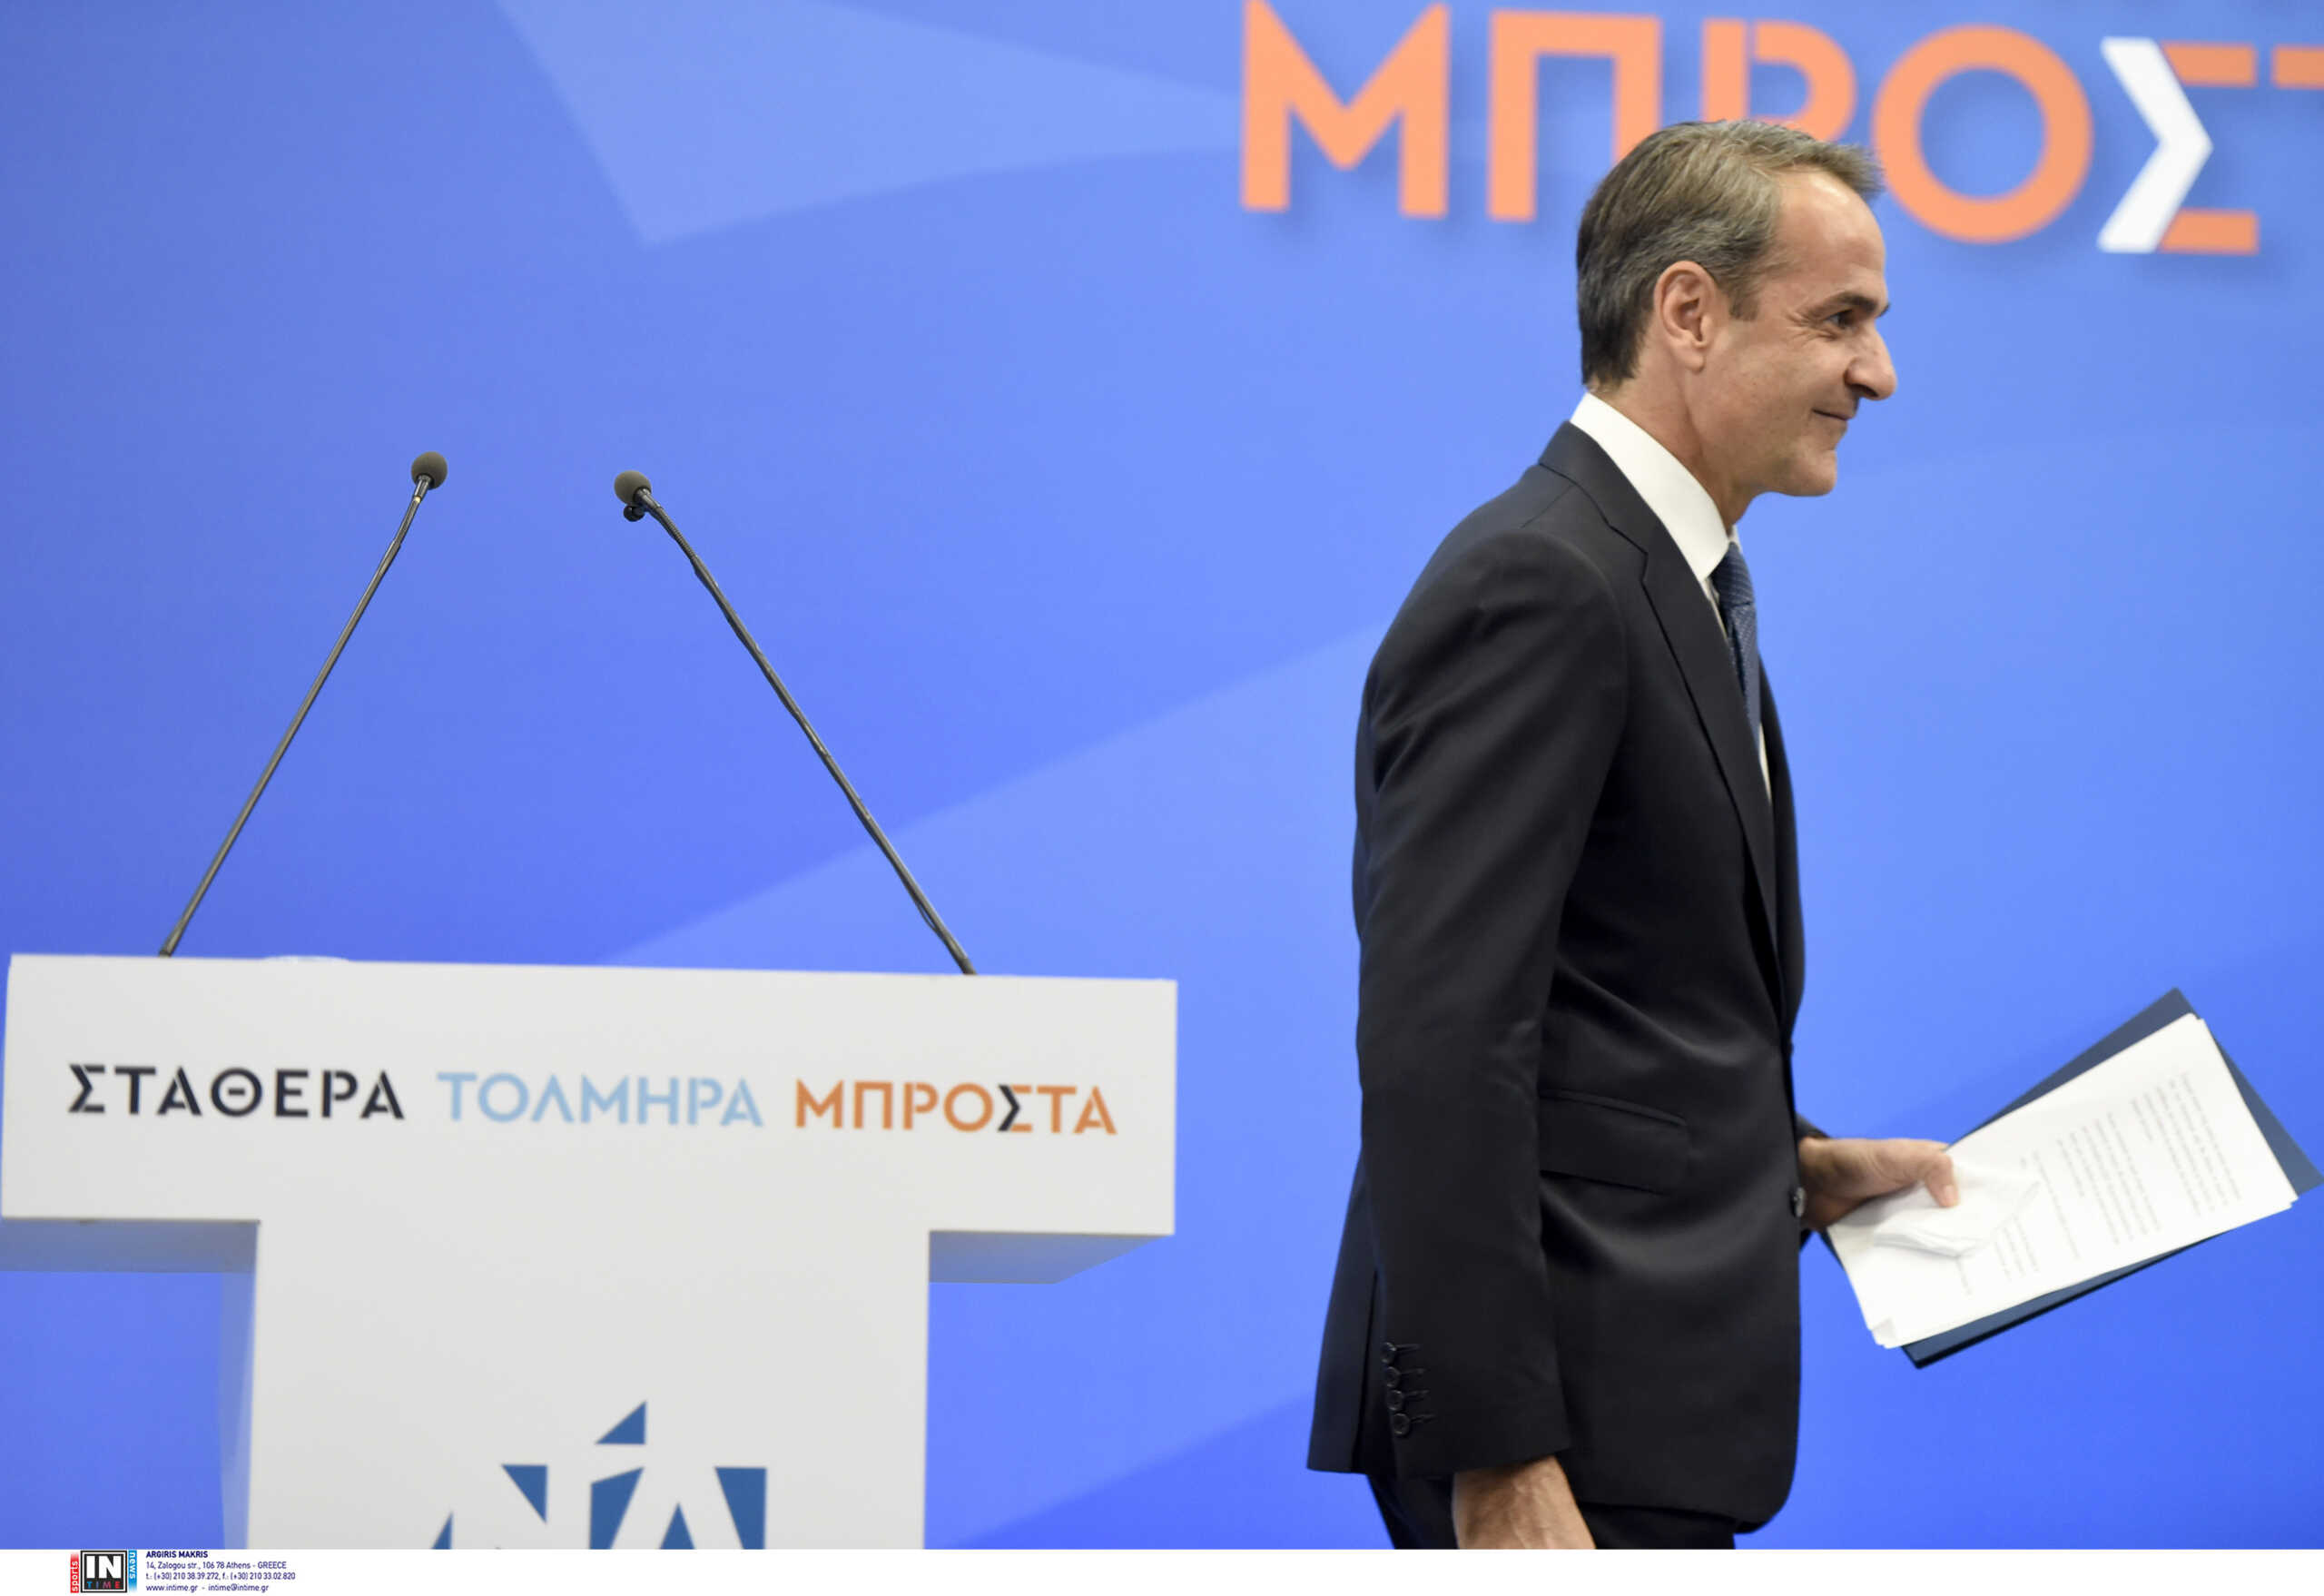 Αποτελέσματα εκλογών – Corriere della Sera: «Το συντηρητικό κόμμα της ΝΔ έχει μεγάλο προβάδισμα στις ελληνικές εκλογές»